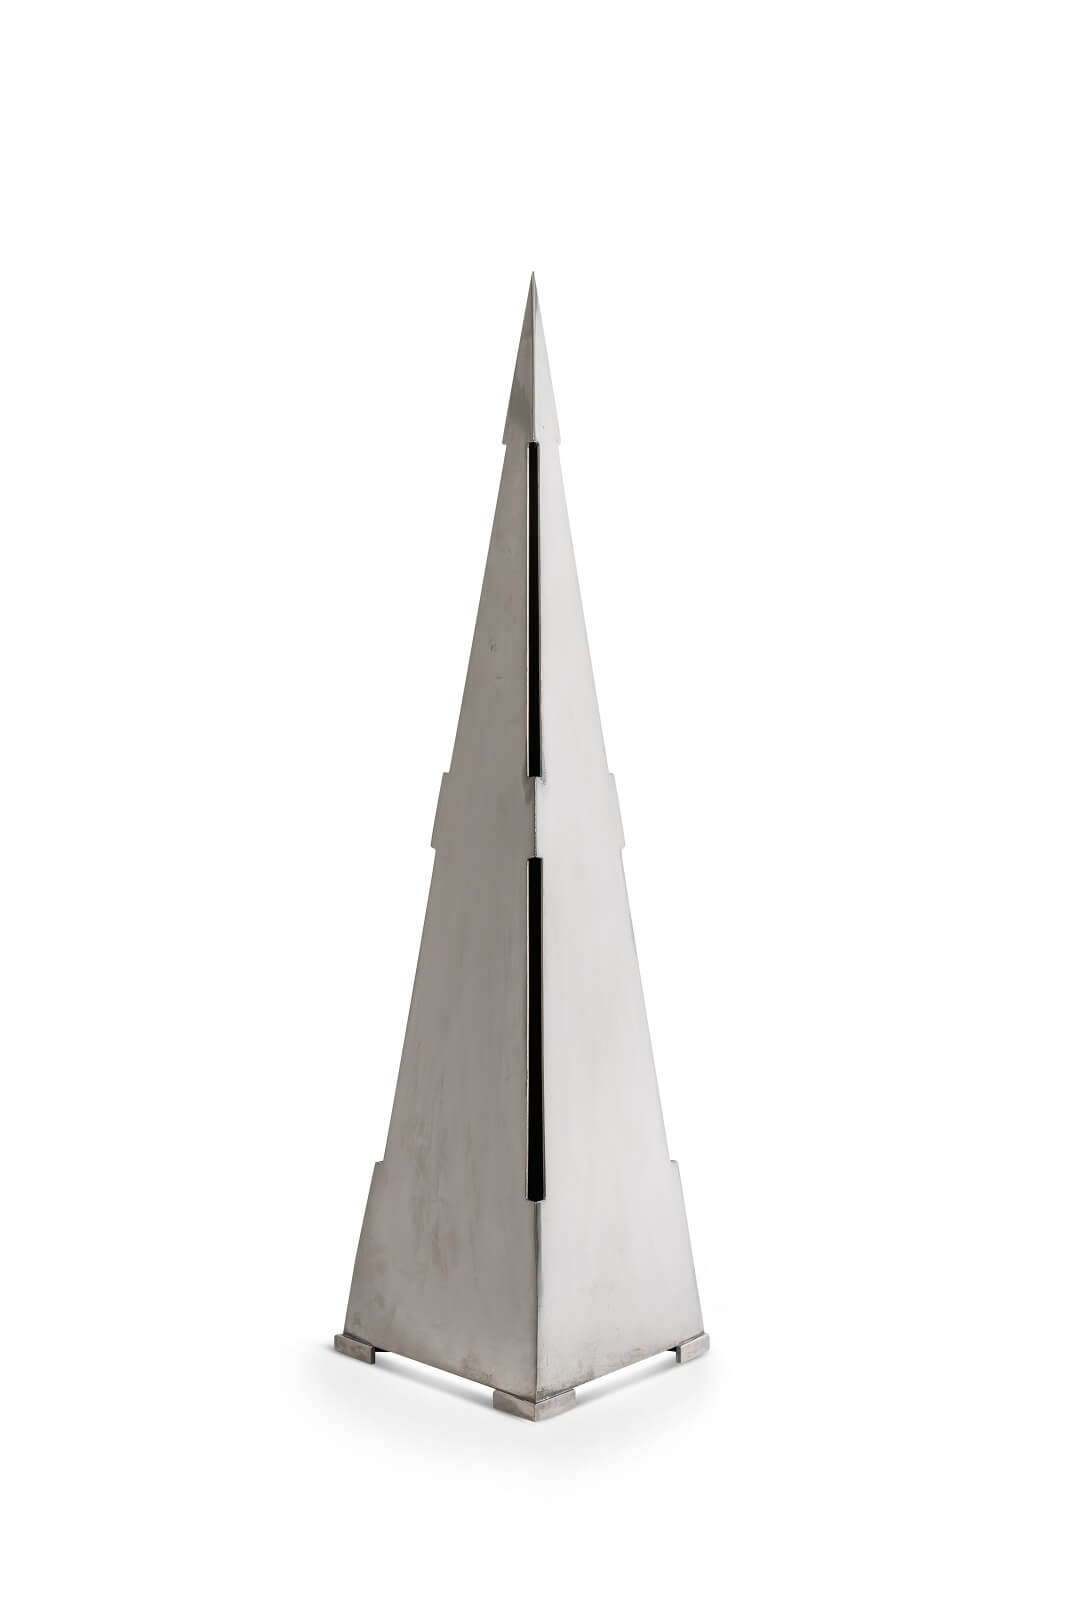 Настольная лампа «Pyramid», Gabriella Crespi - продажа в Москве